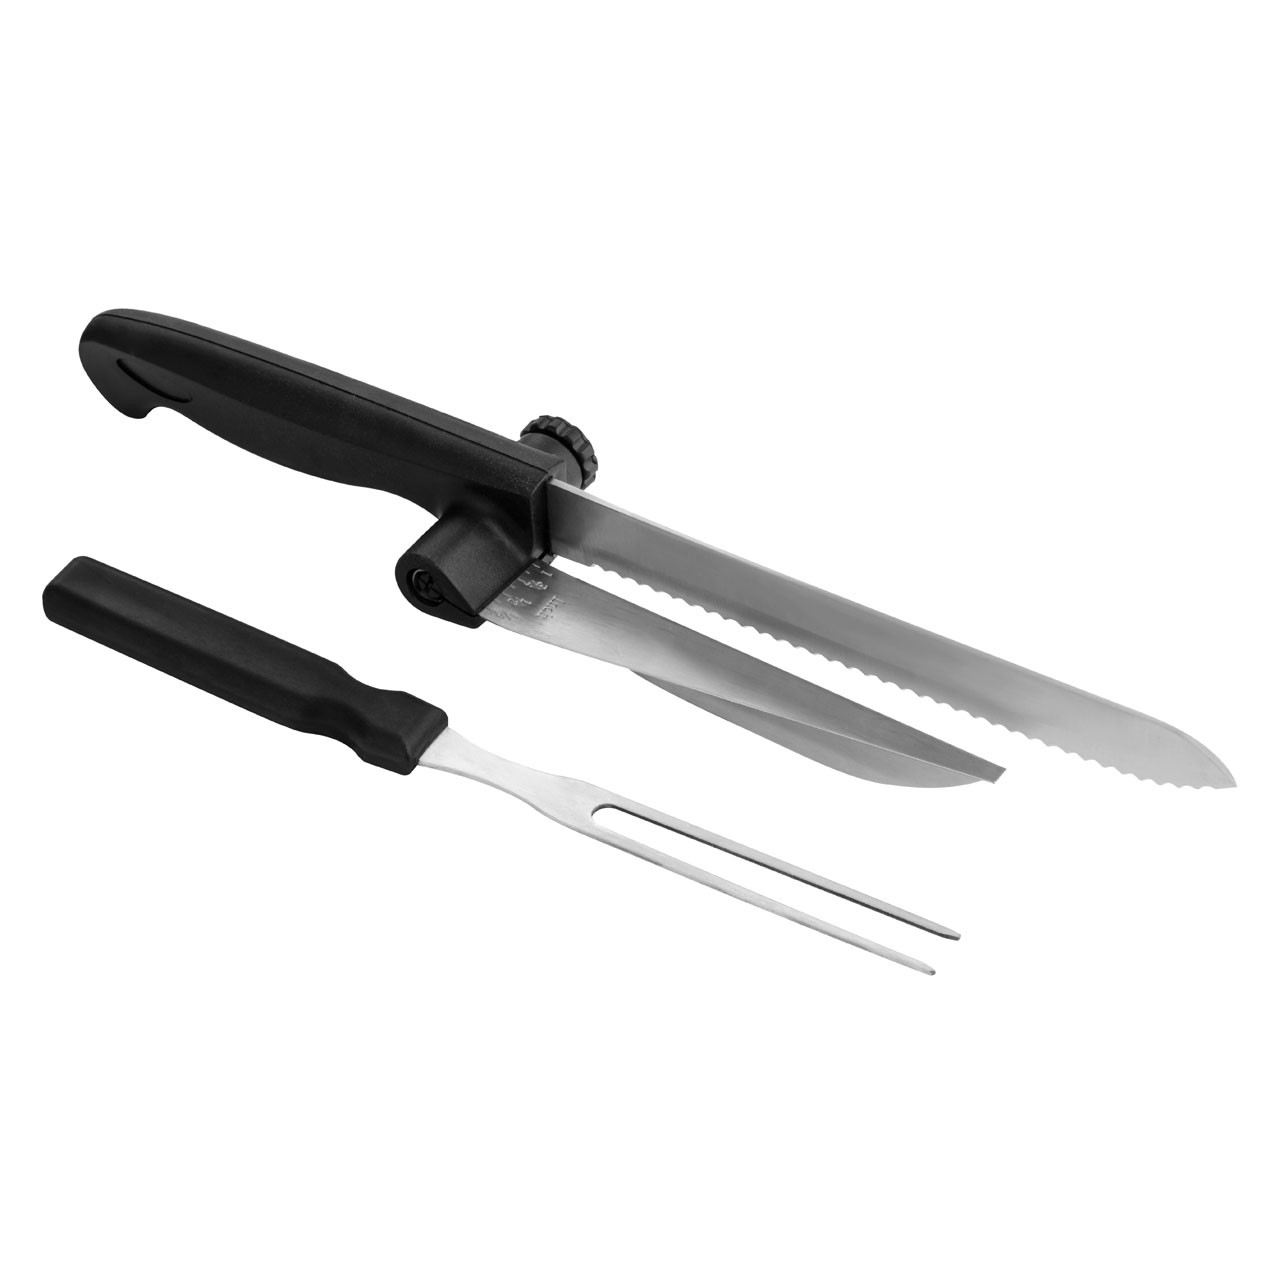 2pc Carving Set Knife/Fork